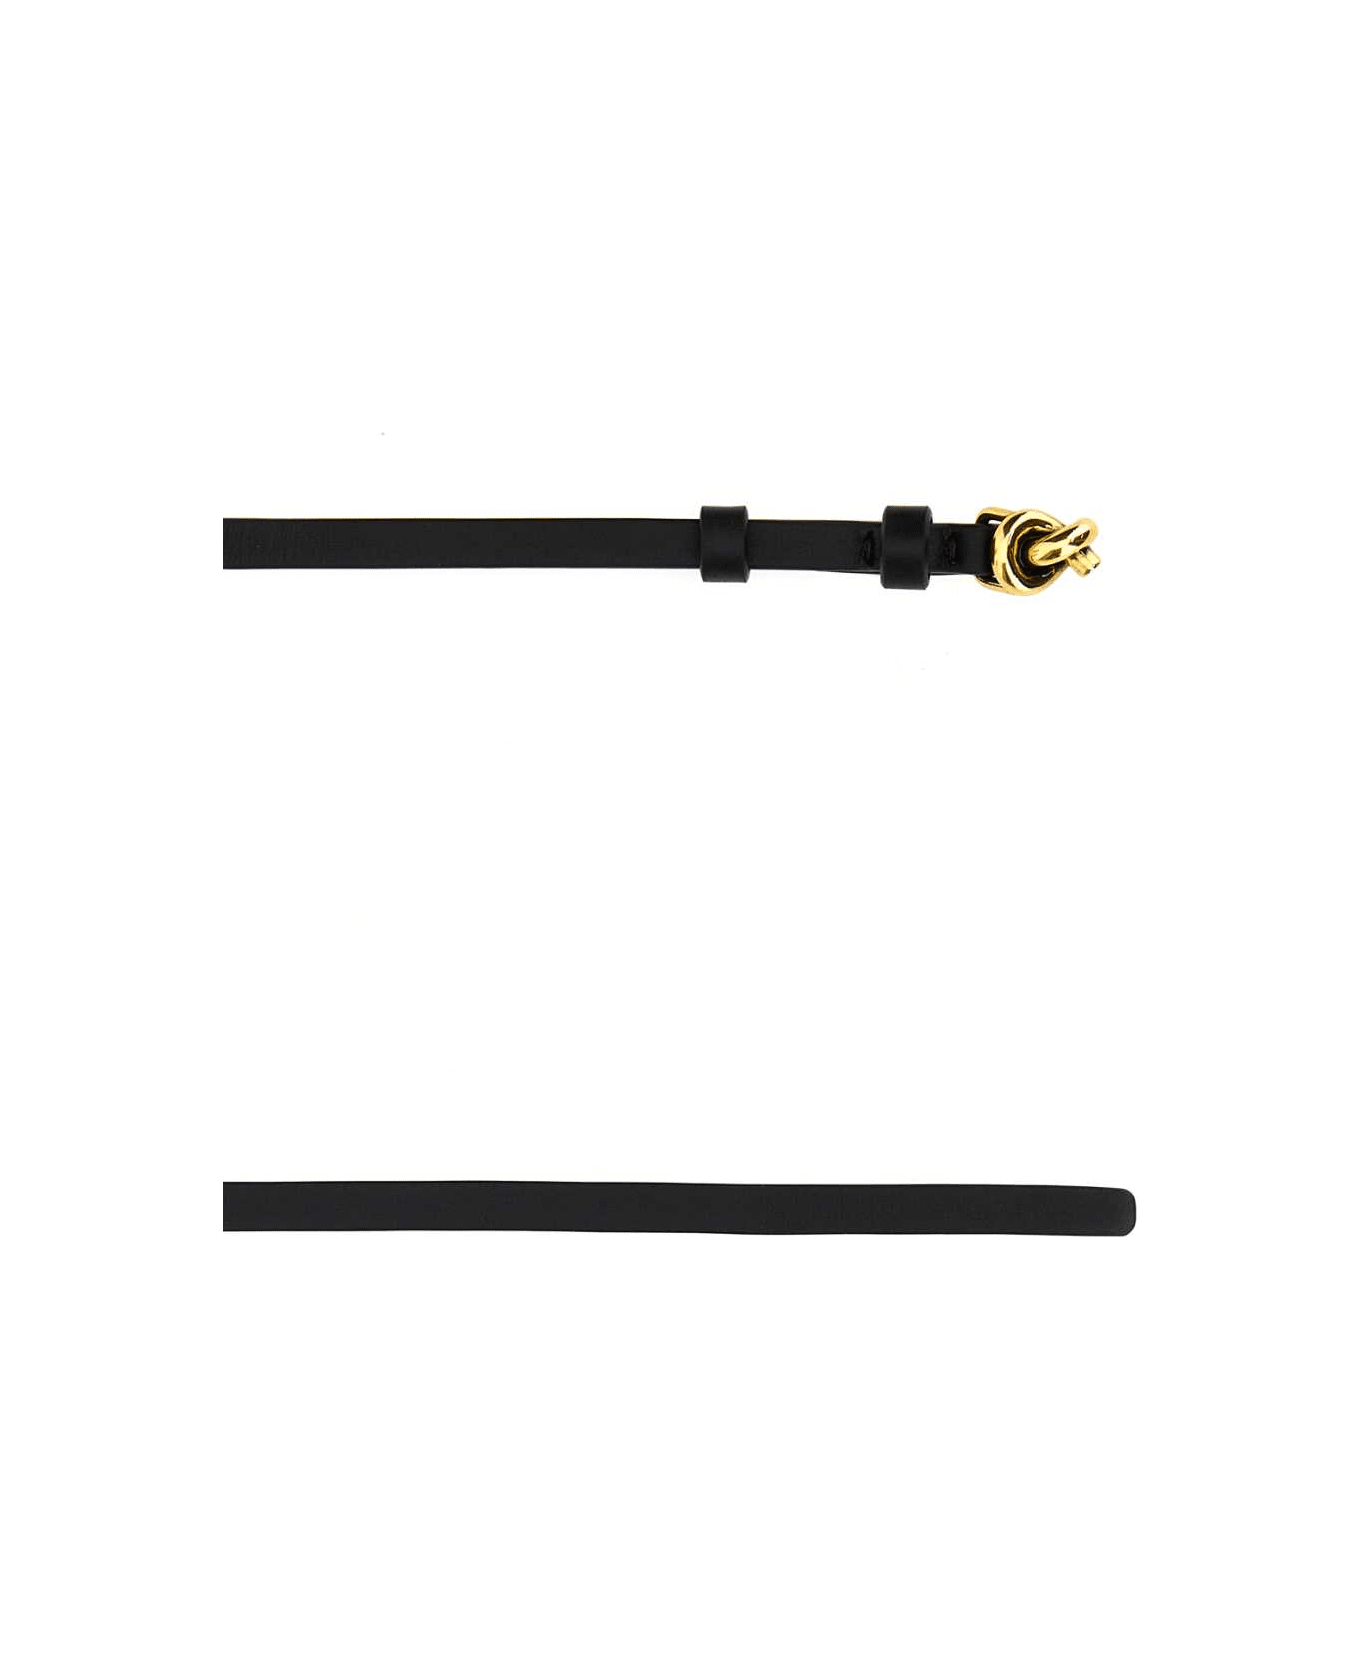 Bottega Veneta Black Leather Small Knot Belt - BLACK